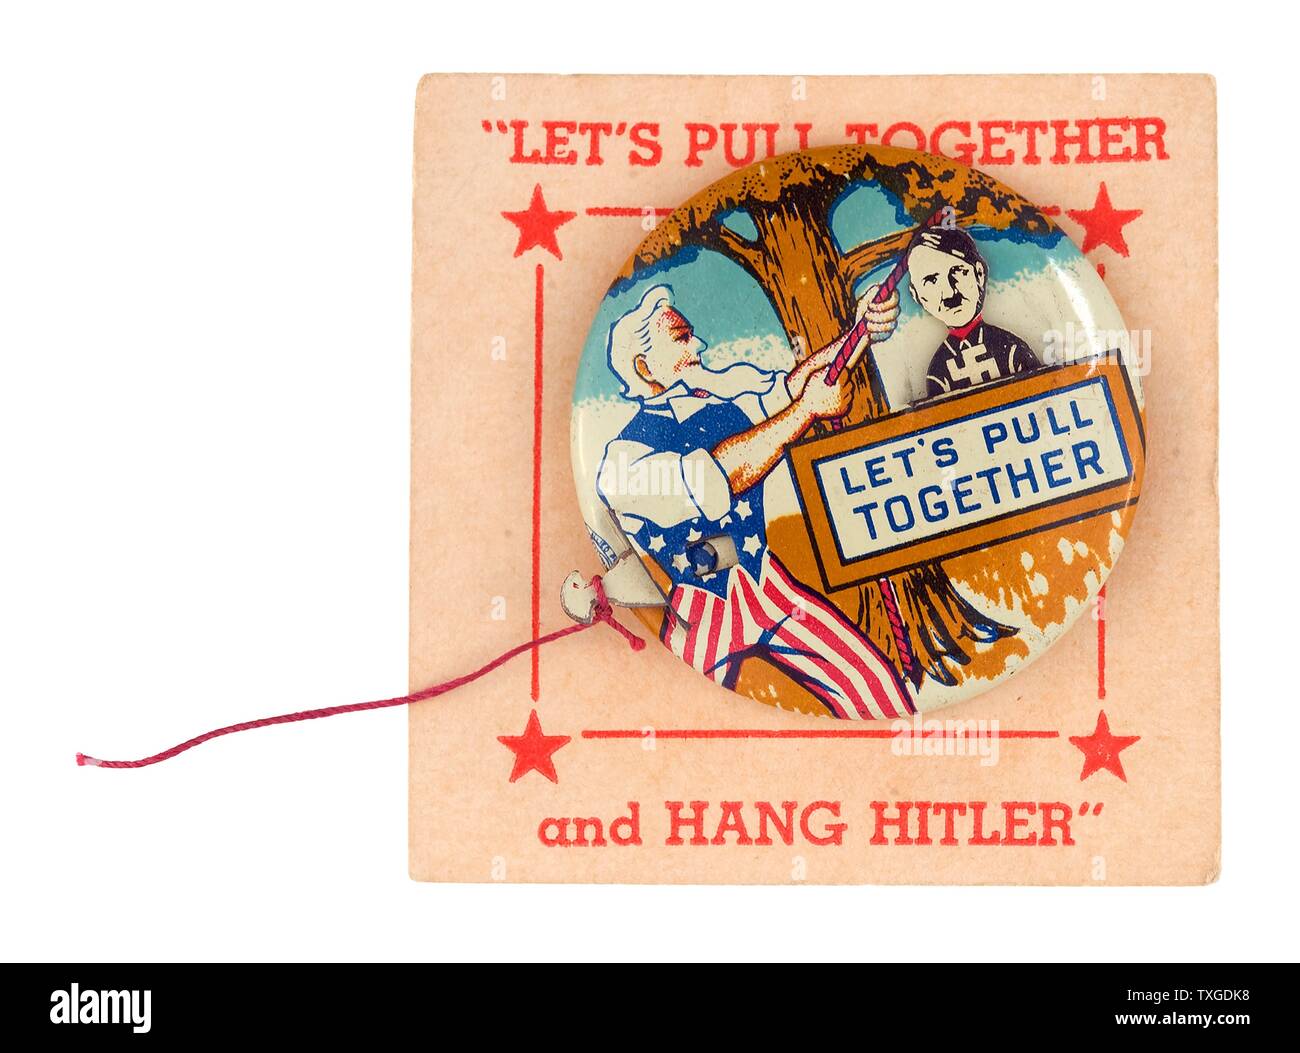 Amerikanischen Krieg-Propaganda-Plakat. Uncle Sam ist dargestellt, Adolf Hitler von einem Ast hängen. Datiert 1943 Stockfoto